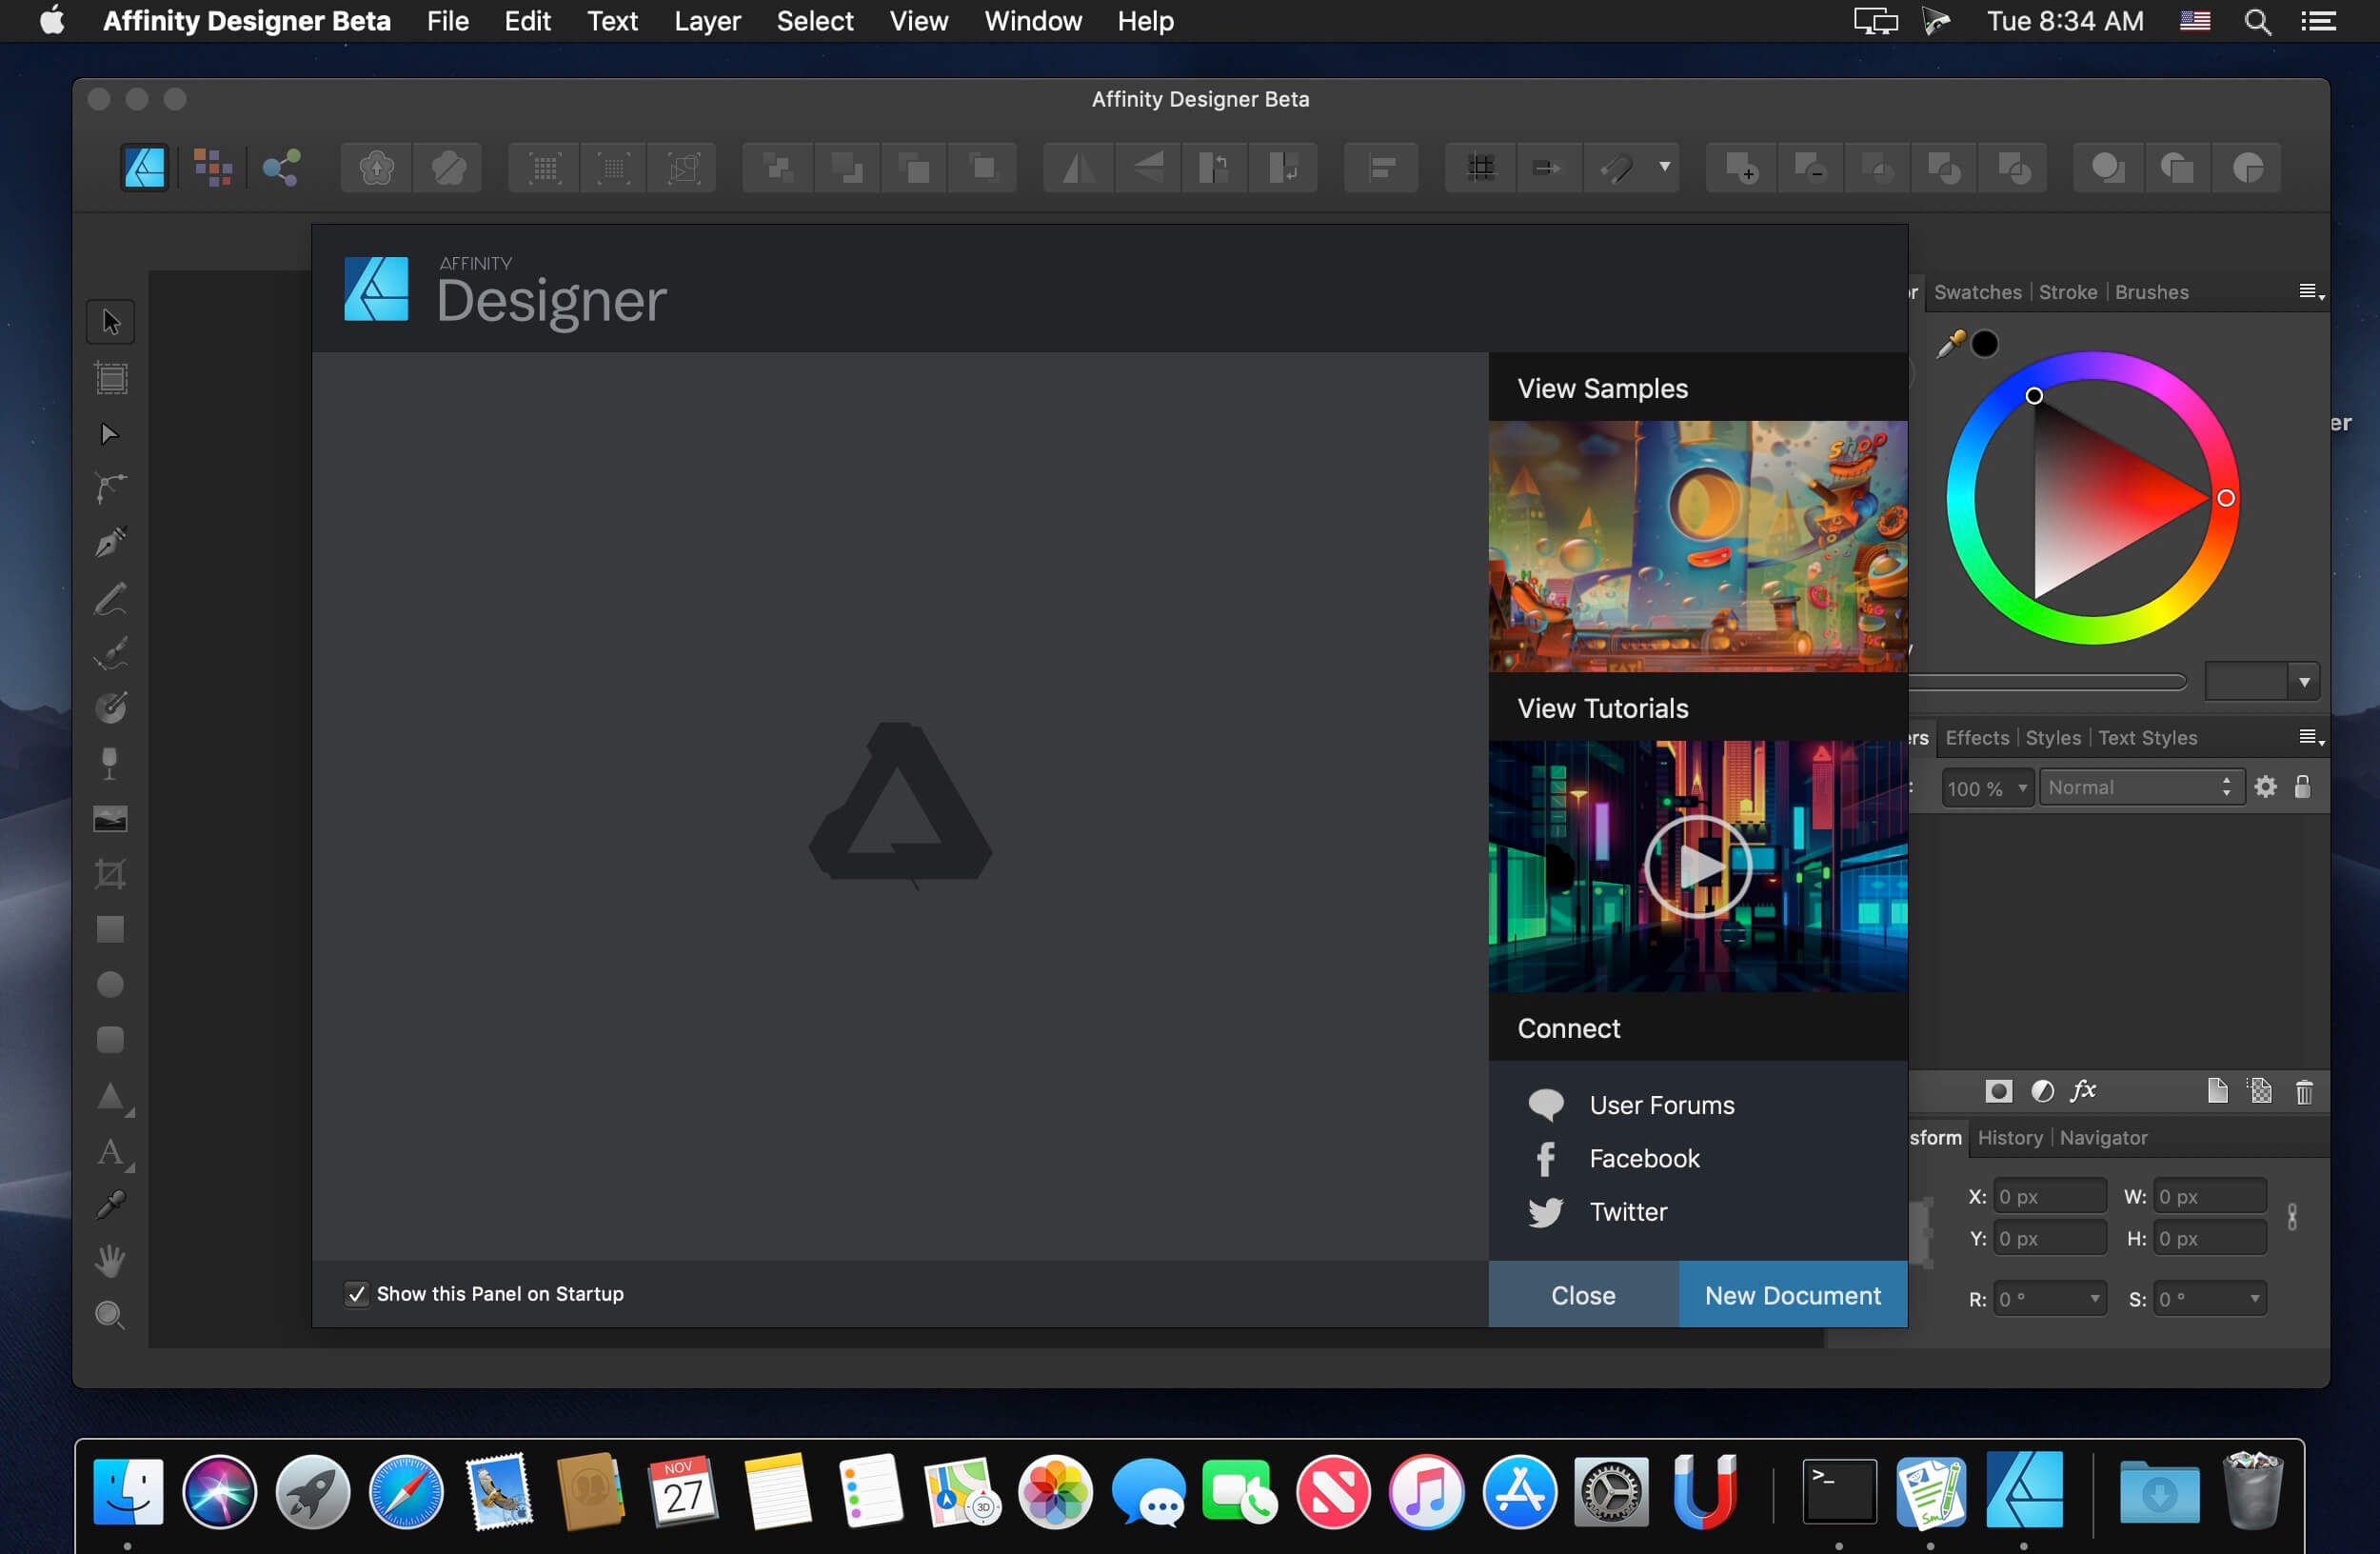 FotoJet Designer 1.2.9 for apple download free